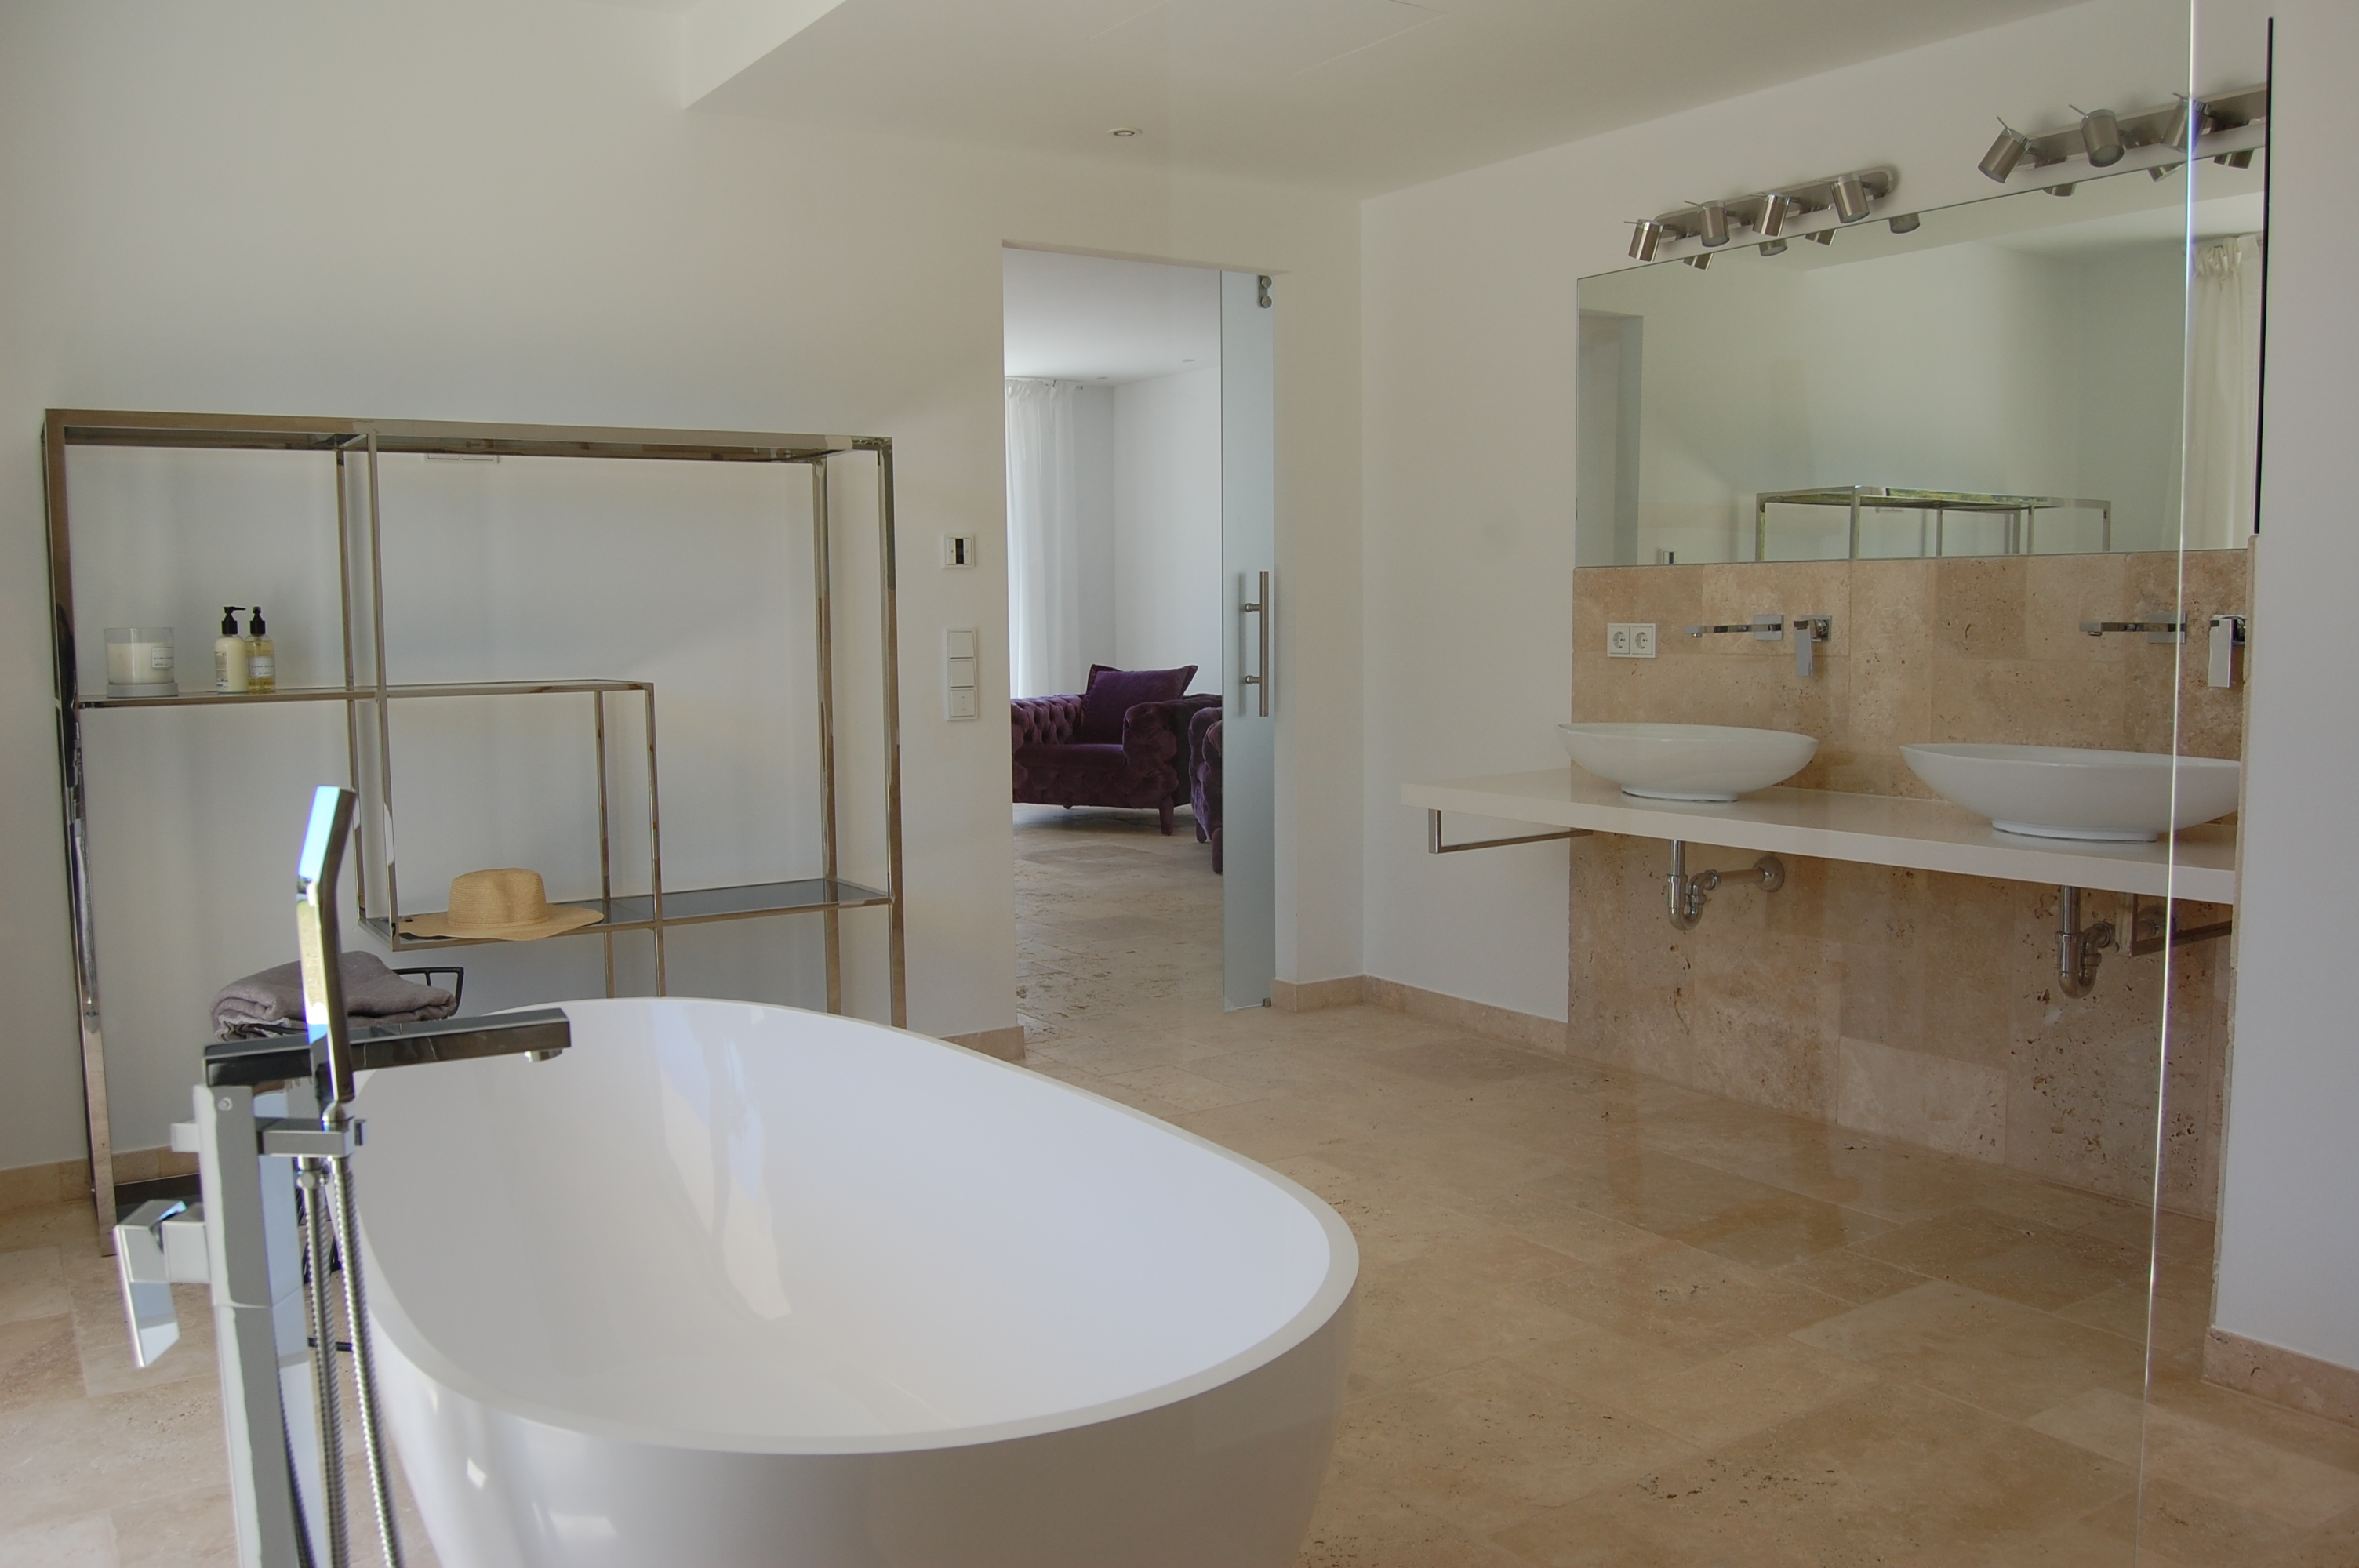 Komplett renovierte Luxusvilla in bester Lage in Santa Ponsa auf Mallorca mit traumhaftem Meerblick